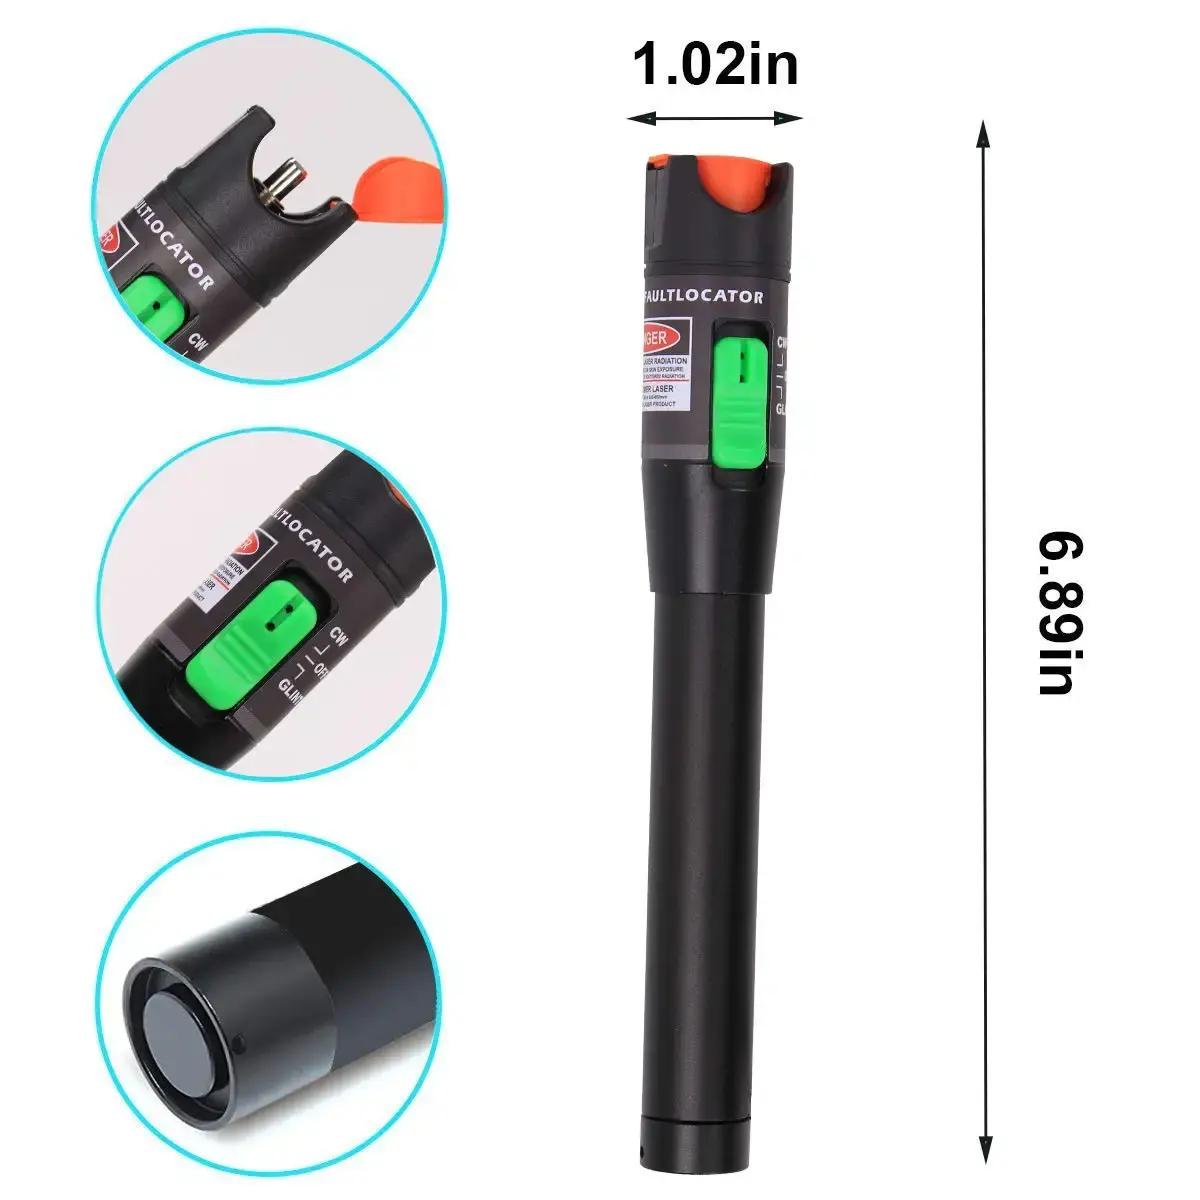 사용이 간편한 소형 레이저 펜 간소화된 네트워크 유지보수 및 문제 촬영 광섬유 시각 오류 탐지기